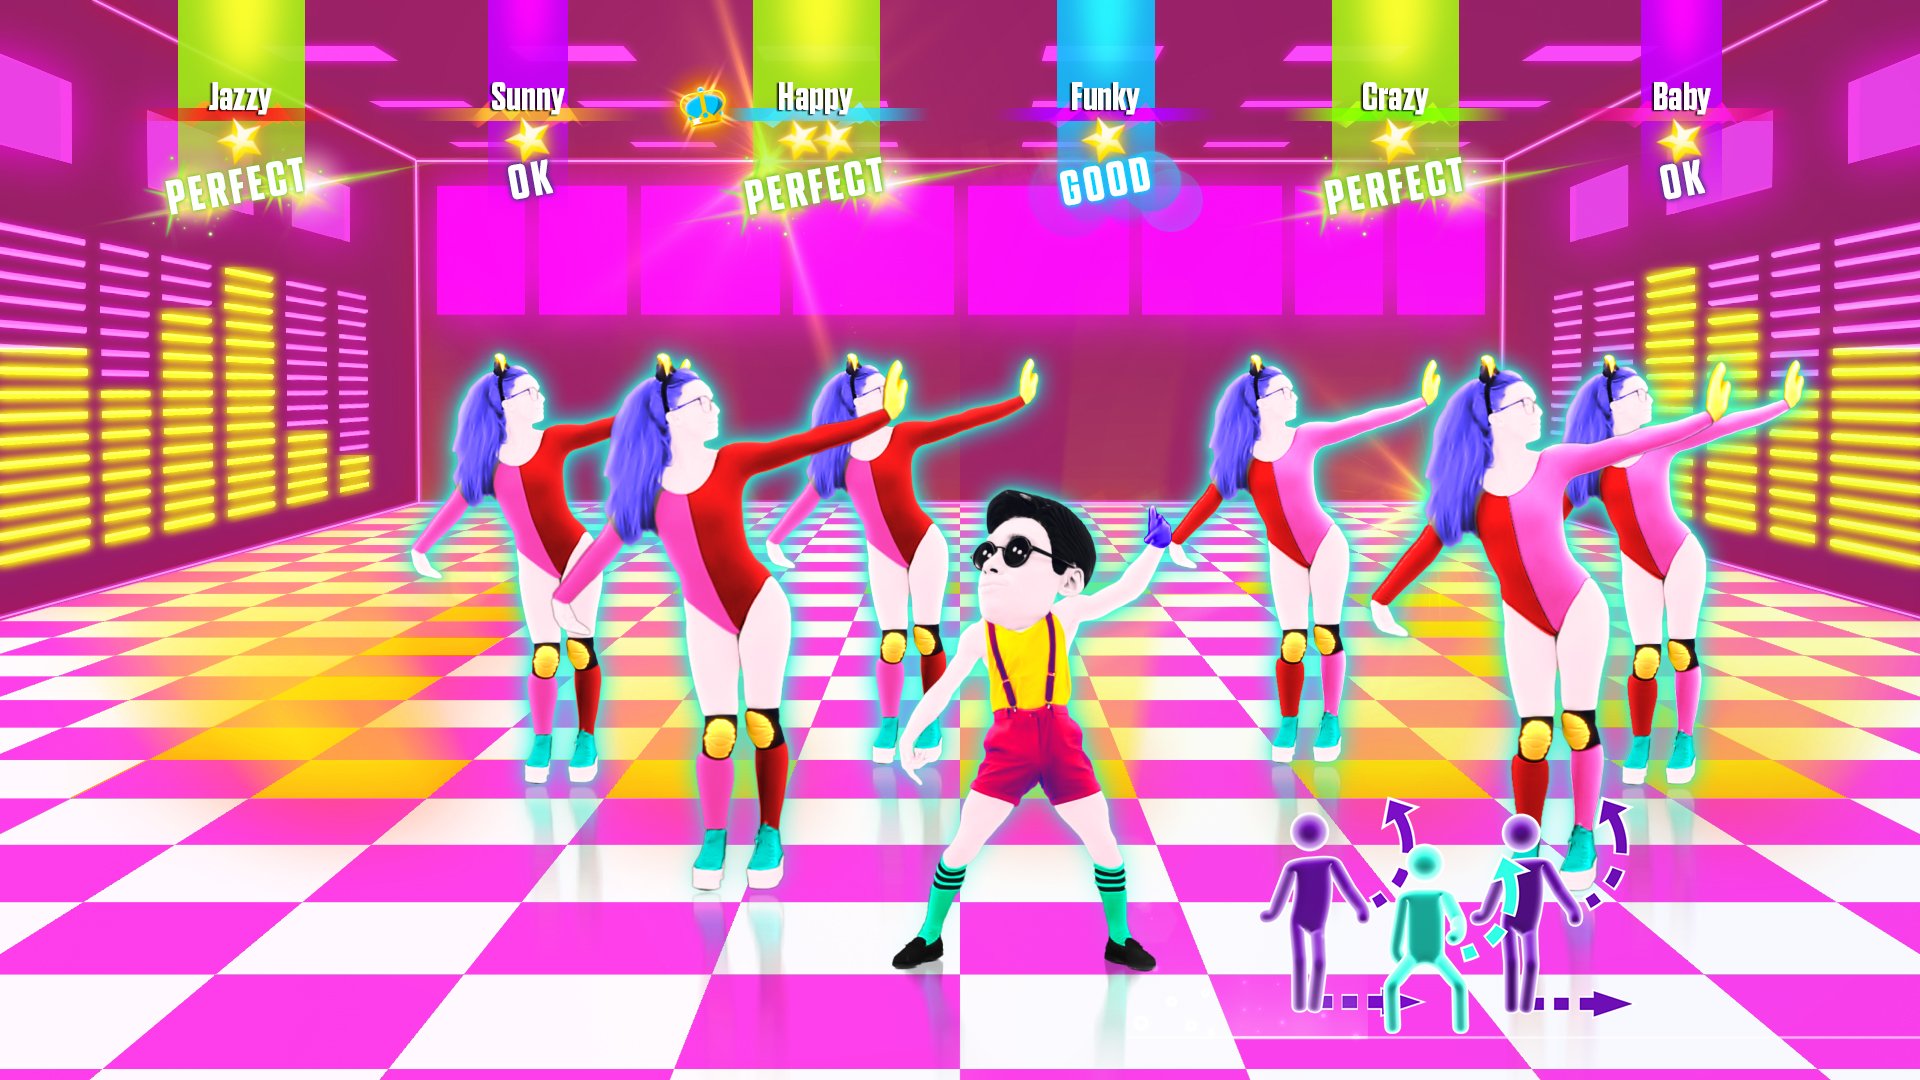 Май игра песни. Игра танцы just Dance. Джаст дэнс 2017. Just Dance 4 Xbox 360. Танцевальная интерактивная игра just Dance.